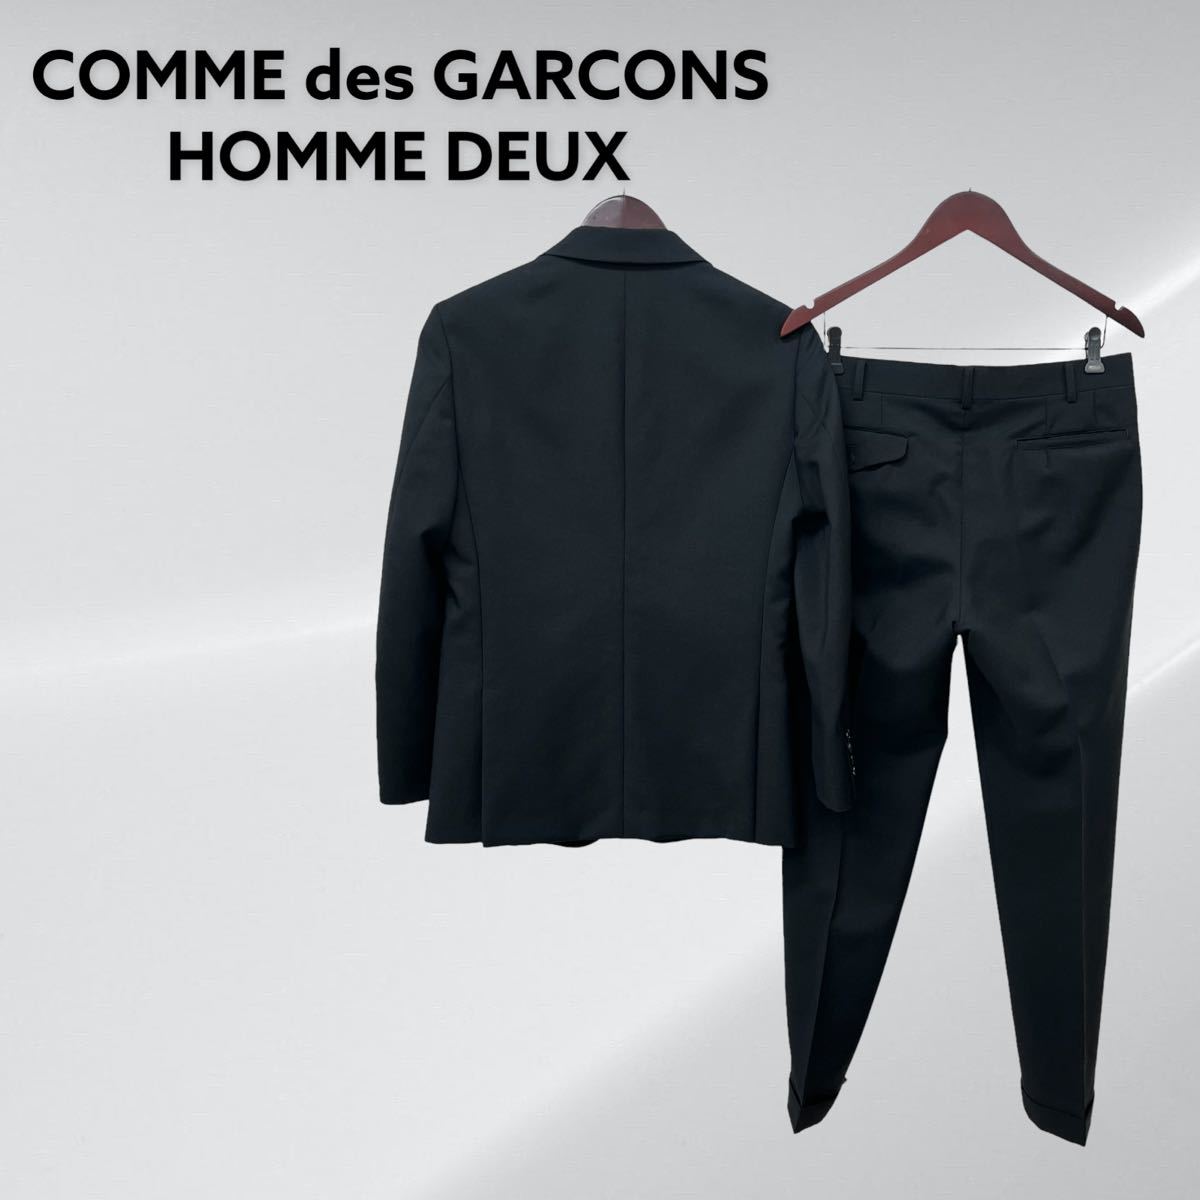 アウトレット用品  ウールジャケット DEUX HOMME Garçons des Comme テーラードジャケット